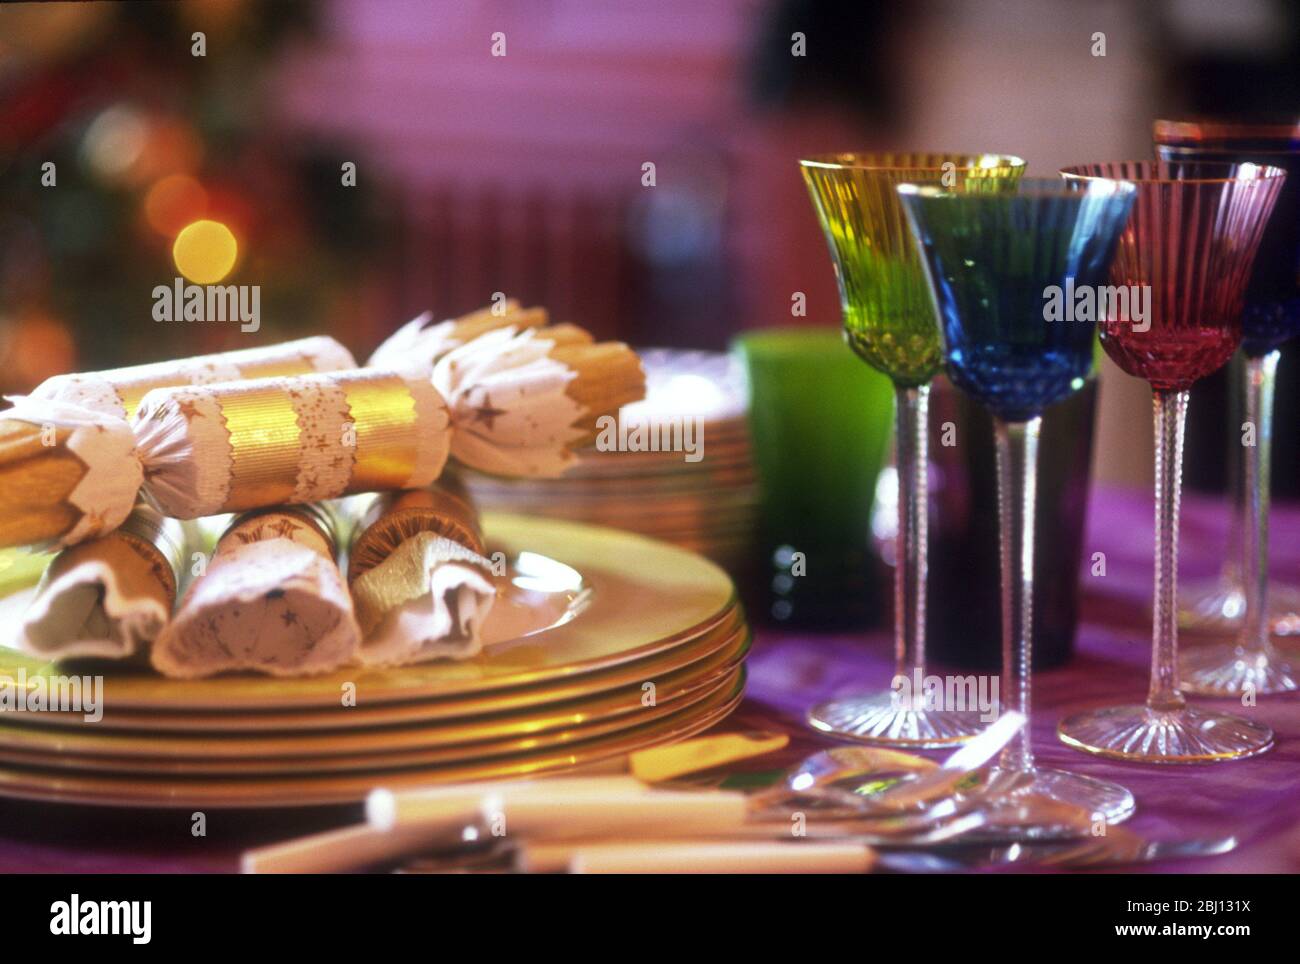 Weihnachtstisch mit festlichen farbigen Langstielgläsern und Crackern - Stockfoto